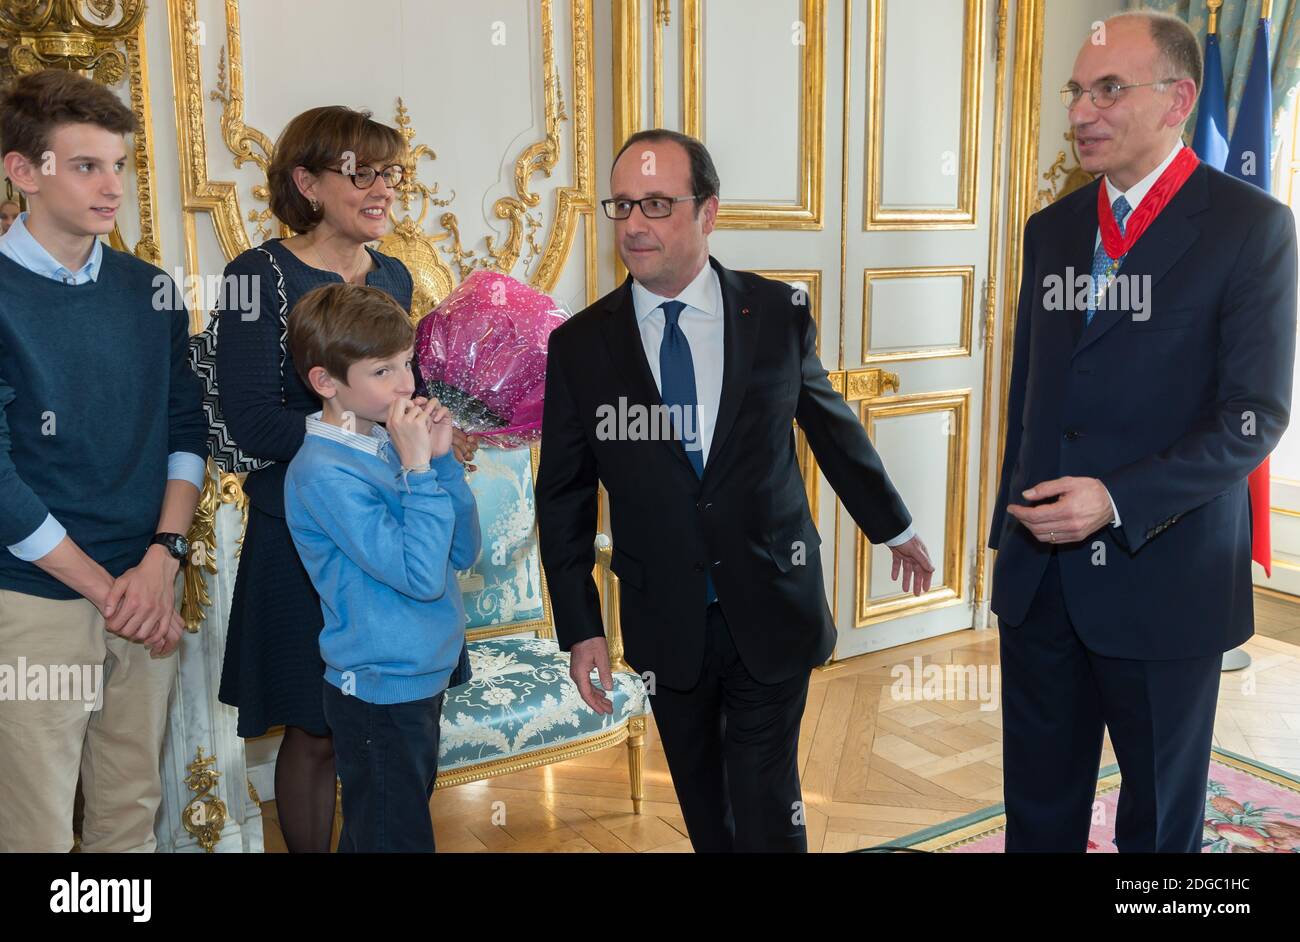 Il presidente francese Francois Hollande, in occasione di una cerimonia di  consegna dell'ordine di comandante della Legione d'onore all'ex presidente  italiano del Consiglio dei ministri Enrico letta, alla presenza della  famiglia di